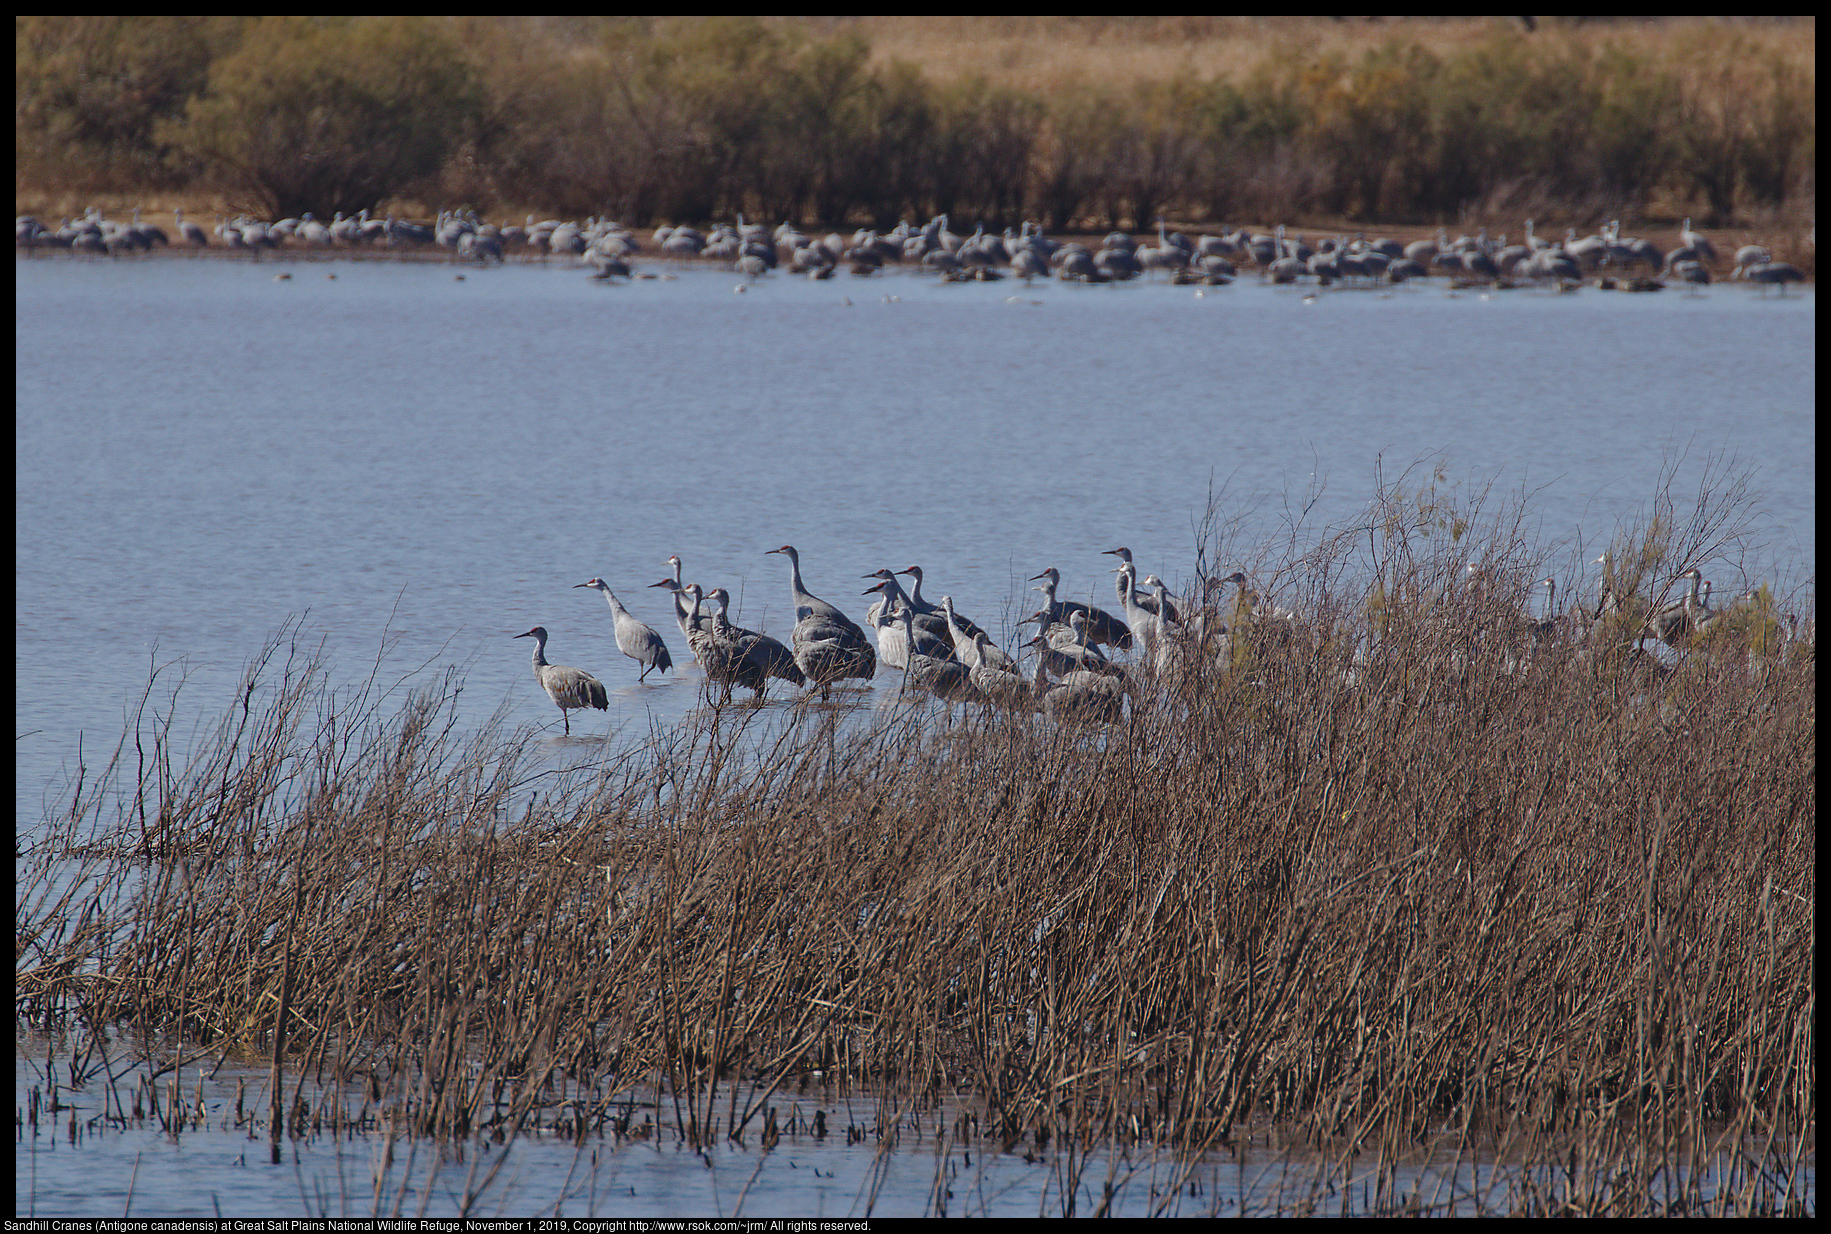 Sandhill Cranes (Antigone canadensis) at Great Salt Plains National Wildlife Refuge, November 1, 2019